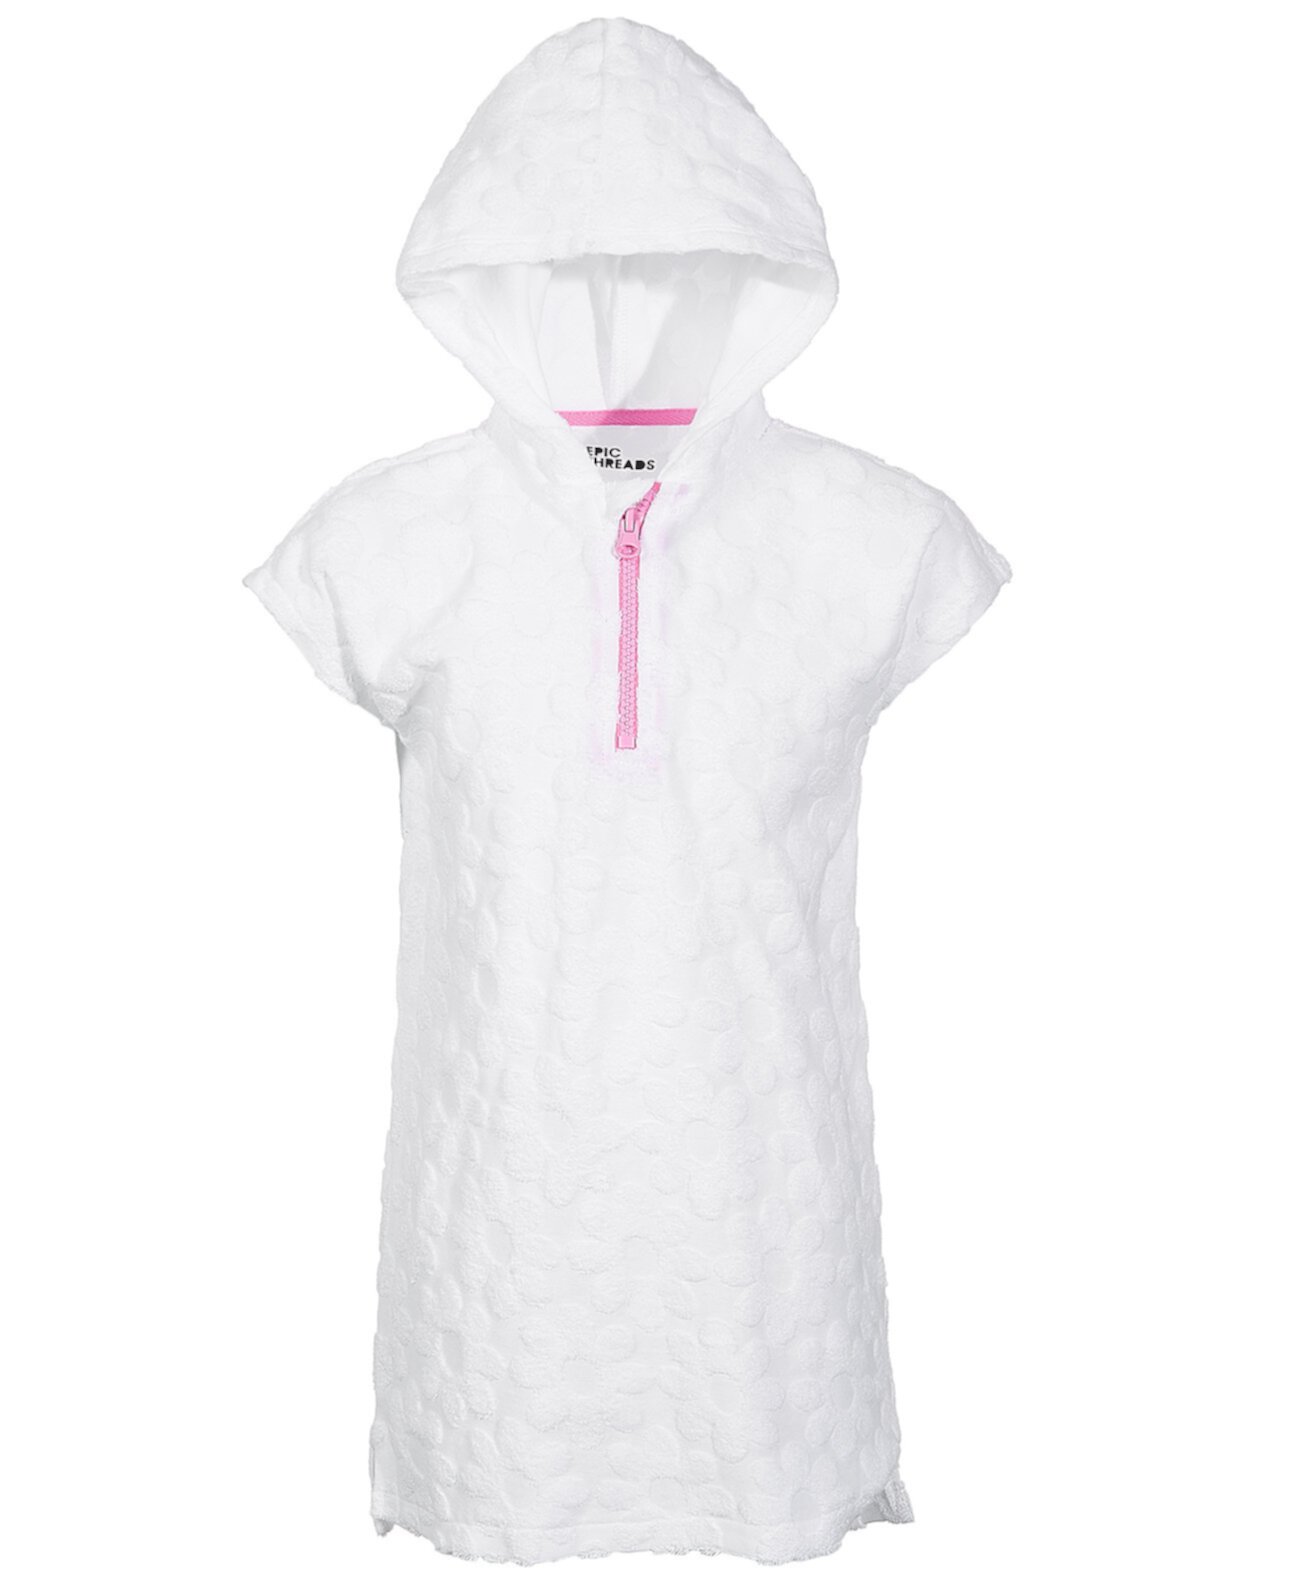 Текстурированная махровая толстовка с короткими рукавами и молнией для малышей и маленьких девочек, созданная для Macy's Epic Threads